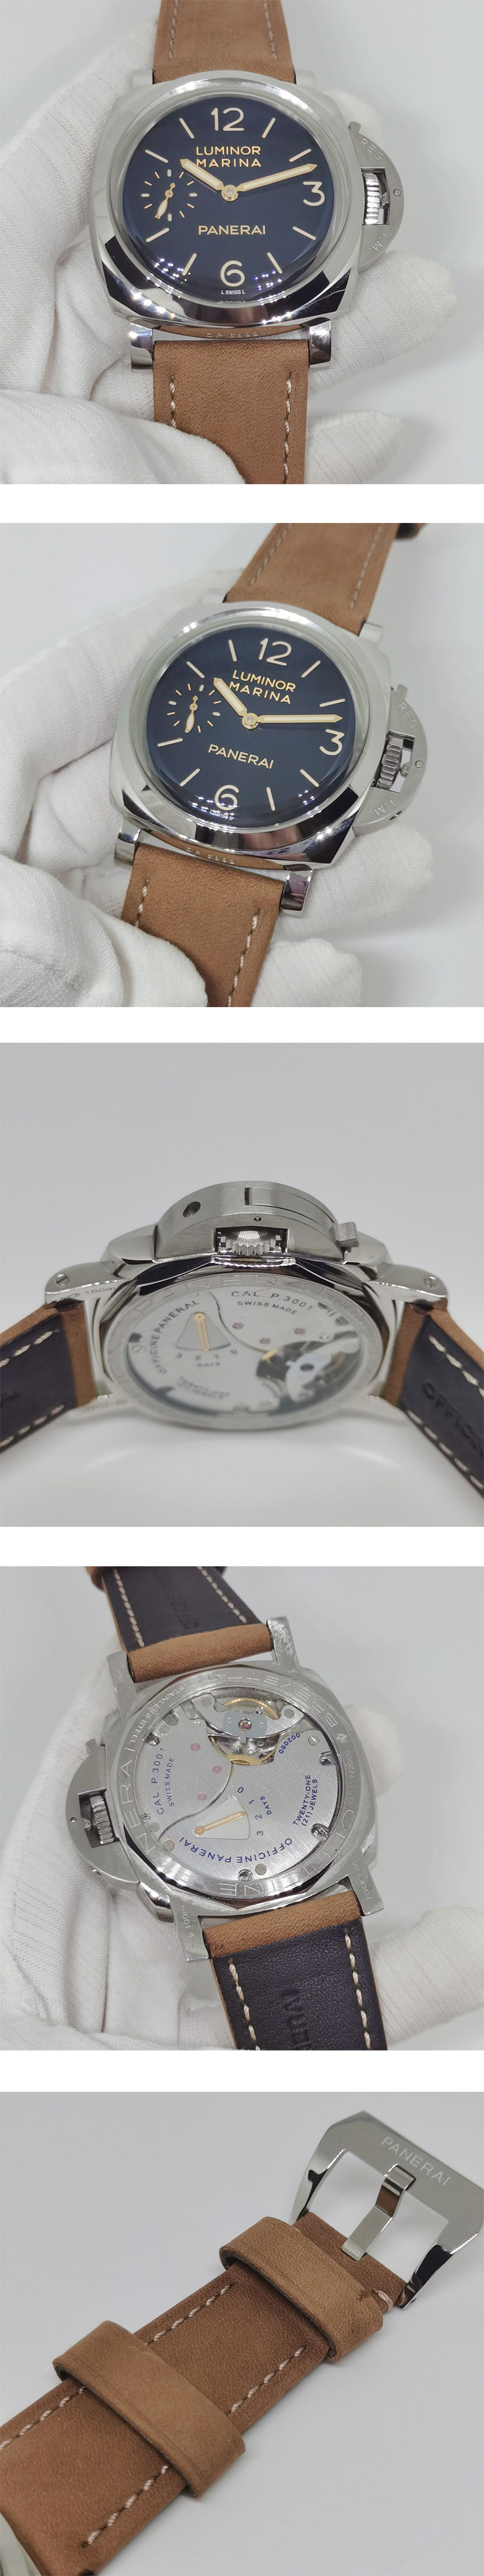 激安腕時計挑戦 パネライコピー ルミノール マリーナ 1950 3DAYS 47ｍｍ PAM00422 手巻き